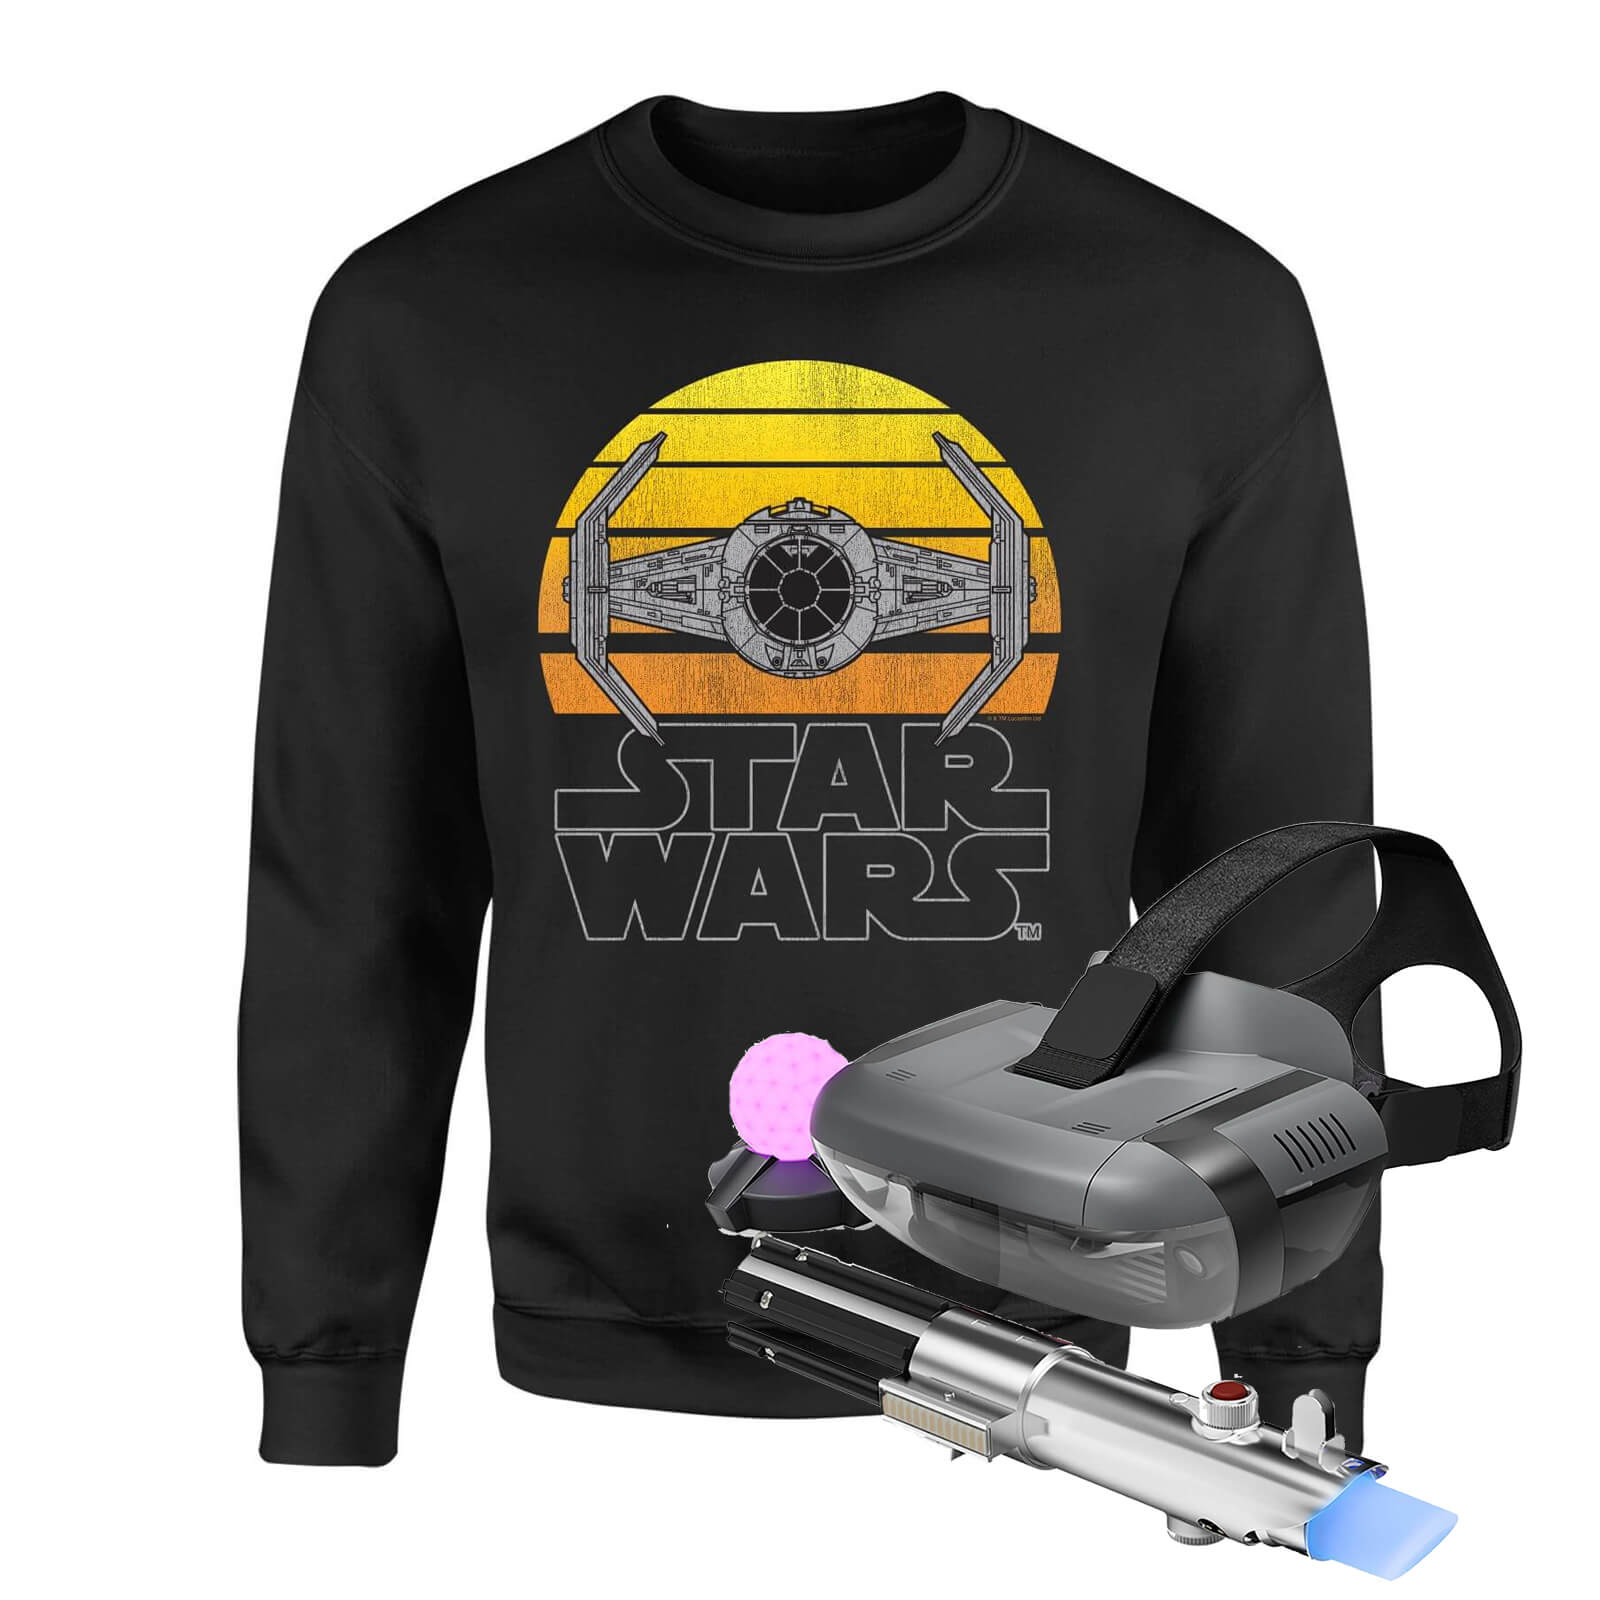 Star Wars AR and Sweatshirt Bundle - Men's - S